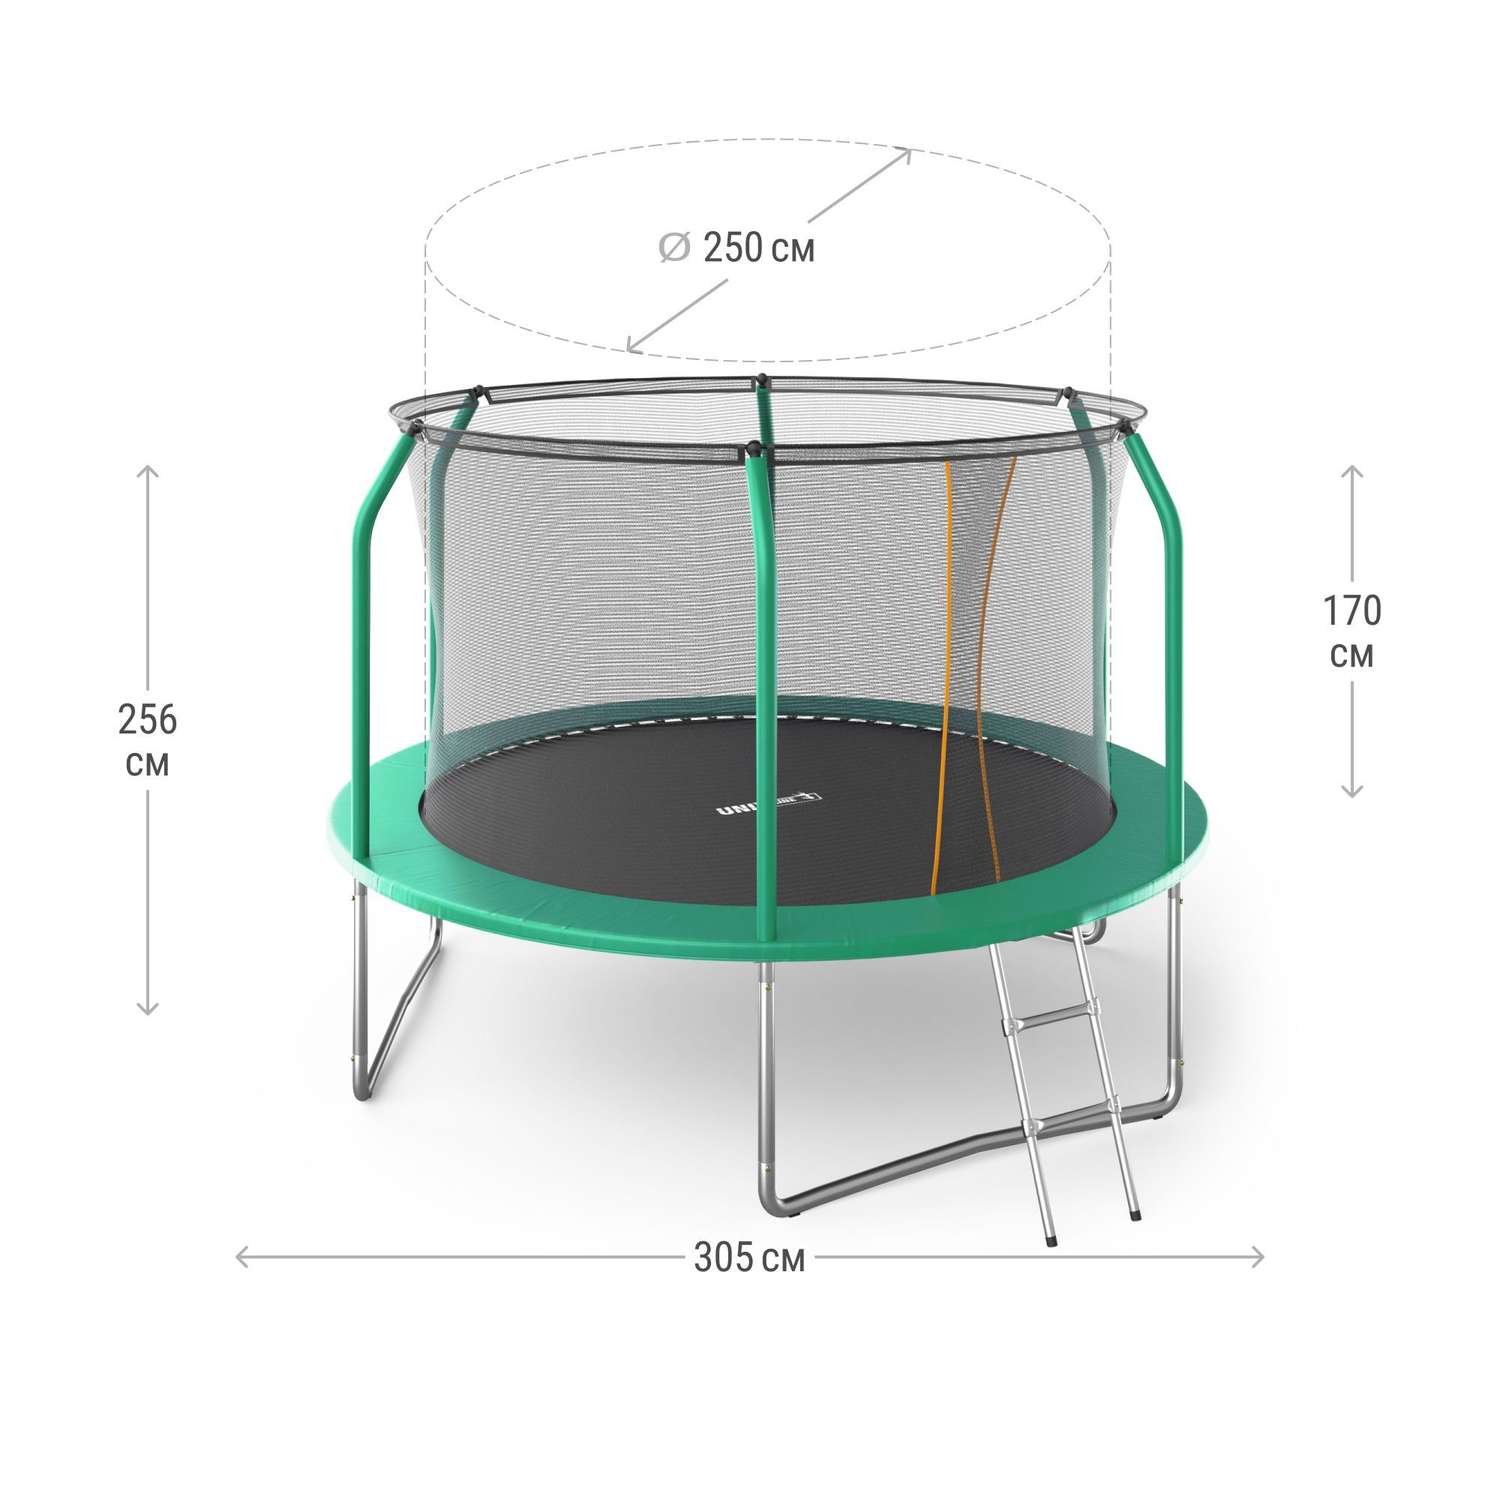 Батут каркасный SUPREME 10 ft UNIX line диаметр 305 см вес до 150 кг диаметр прыжковой зоны 250 см - фото 2